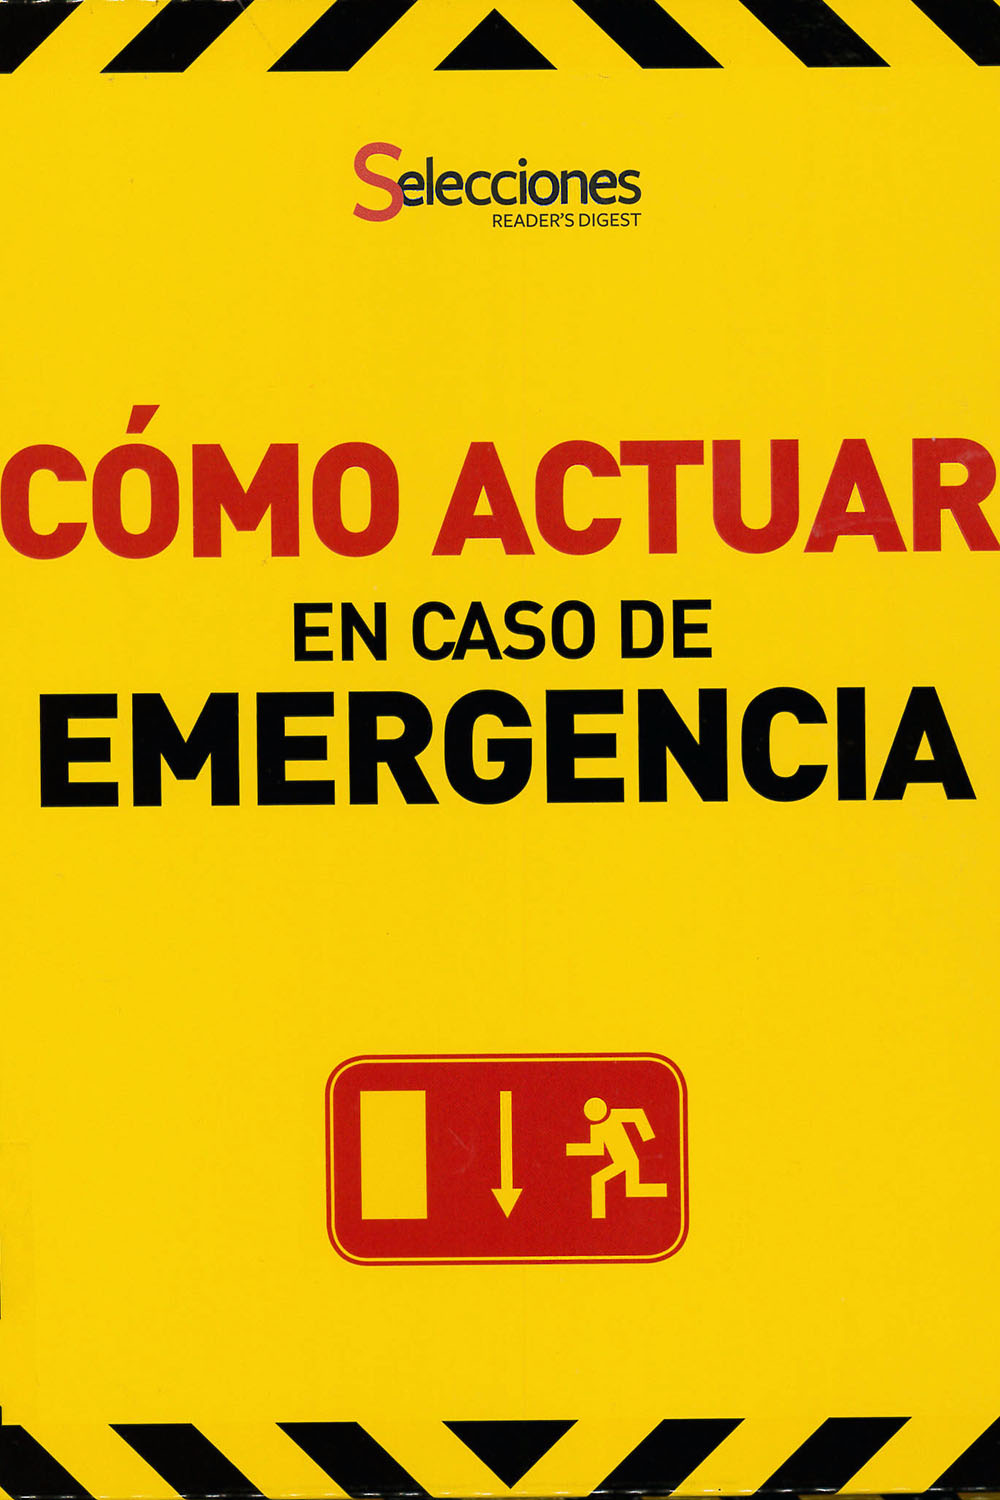 12 / 26 - RC86.8 C65 Cómo Actuar en caso de Emergencia - Selecciones, Buenos Aires 2011